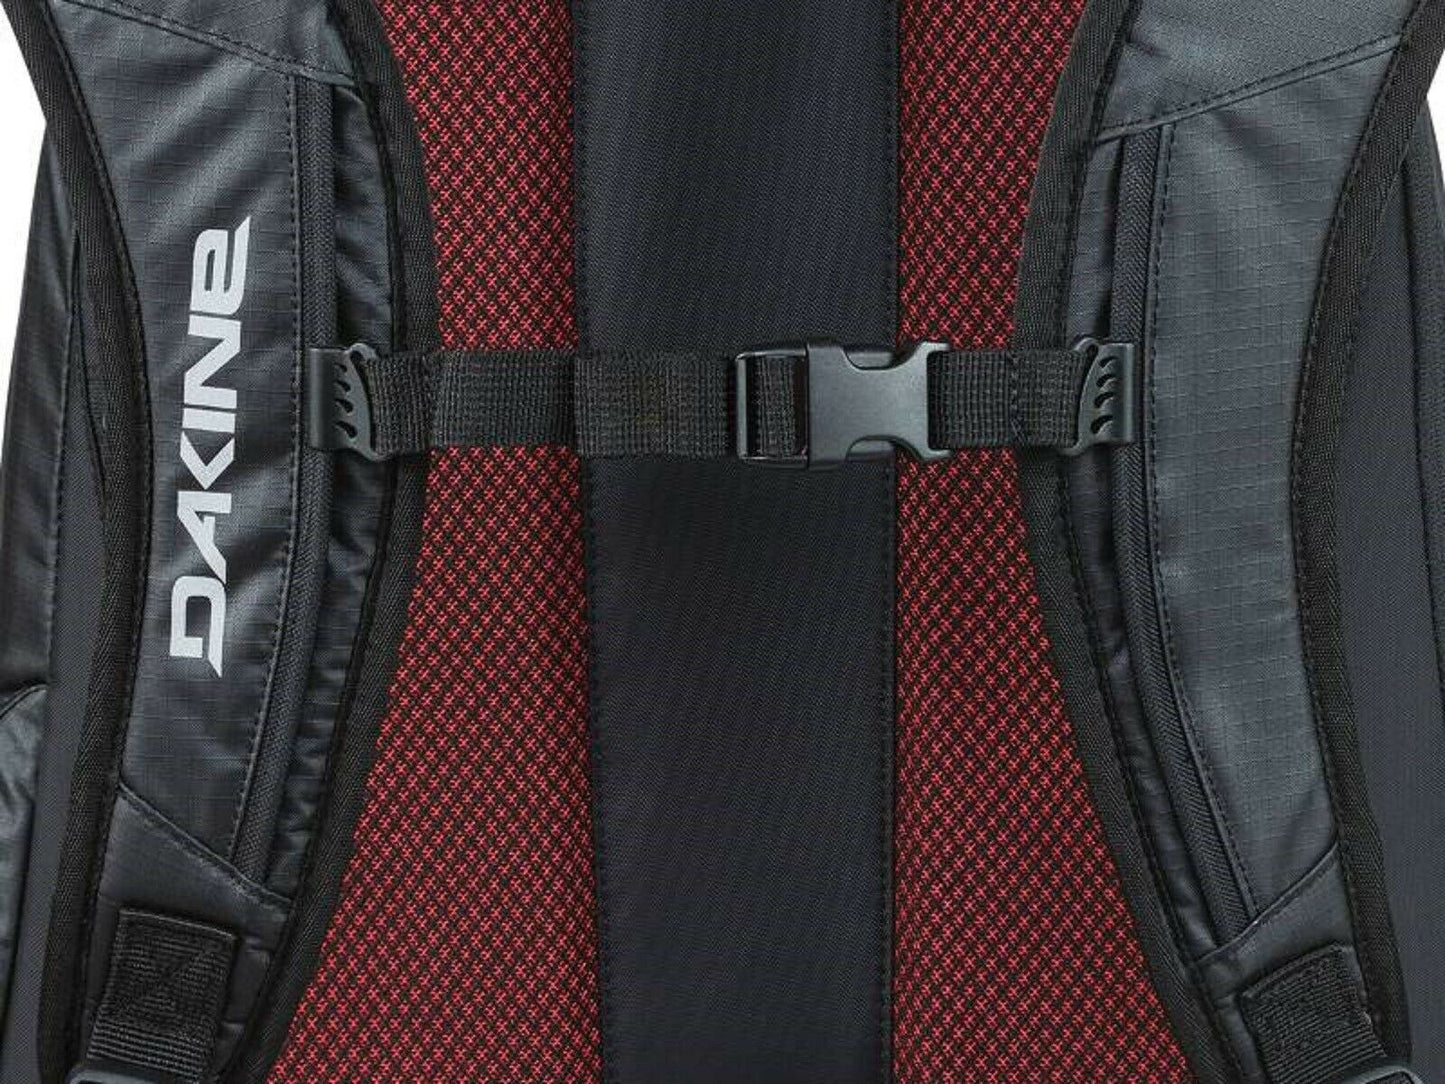 Dakine Rucksack 101 Pack 29L Storm - mit Laptopfach, Schultasche, Freizeittasche